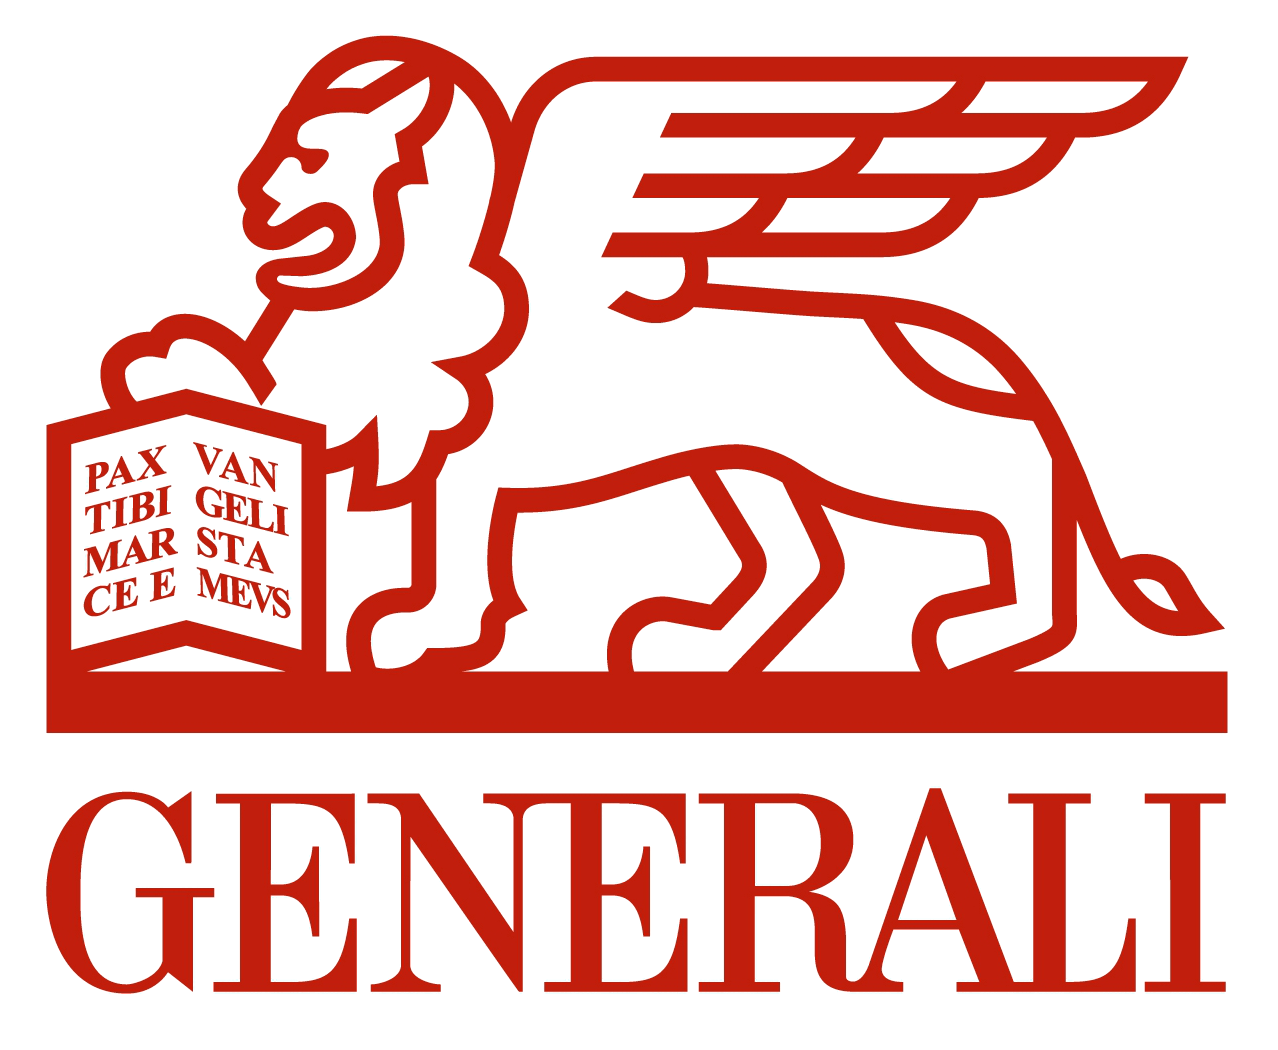 GENERALI GRAND PRIX 2018